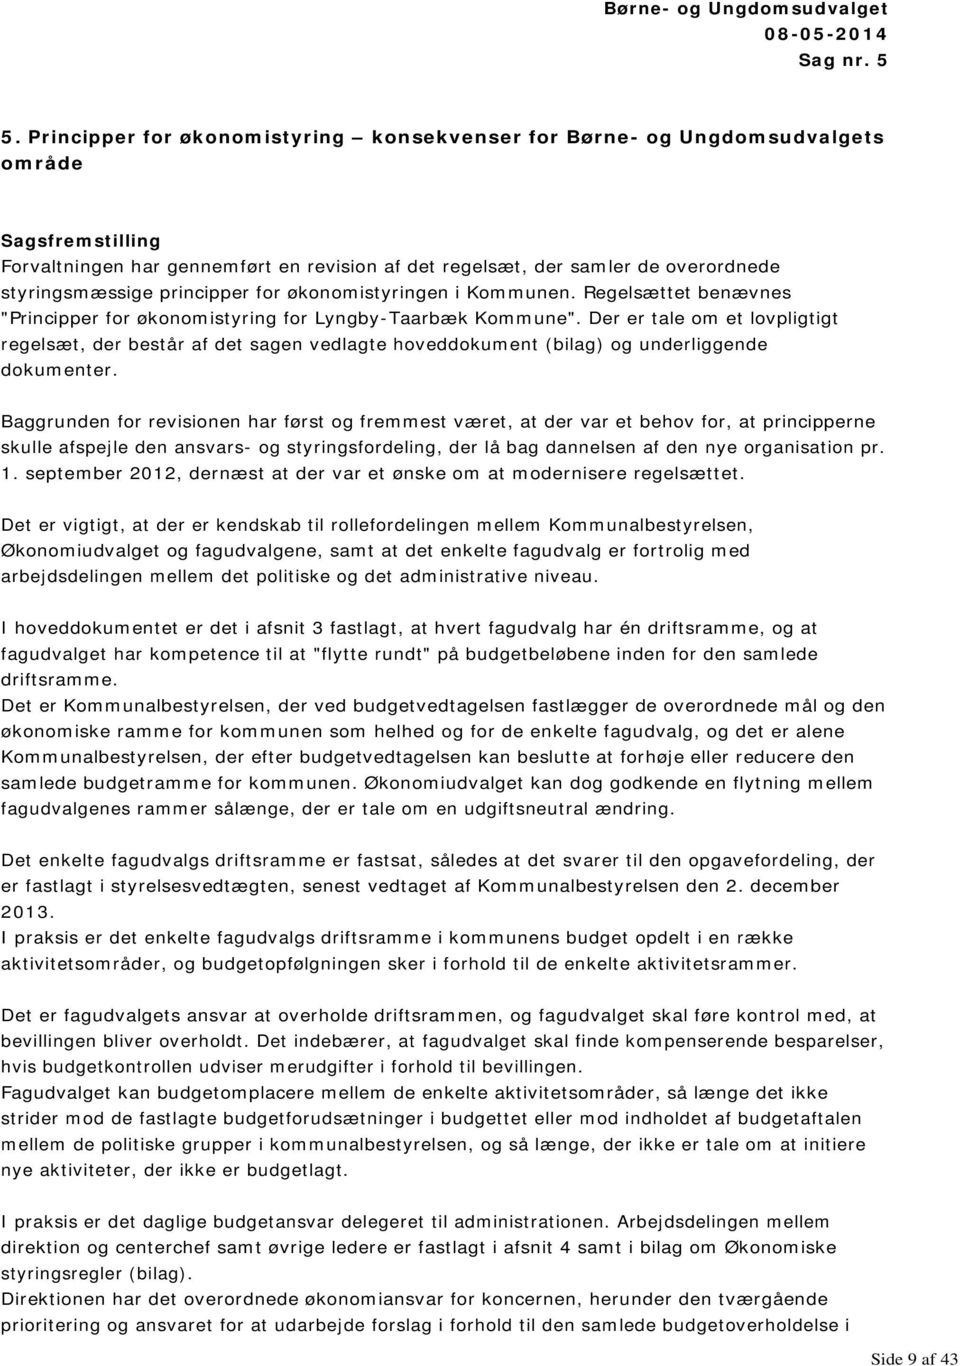 principper for økonomistyringen i Kommunen. Regelsættet benævnes "Principper for økonomistyring for Lyngby-Taarbæk Kommune".